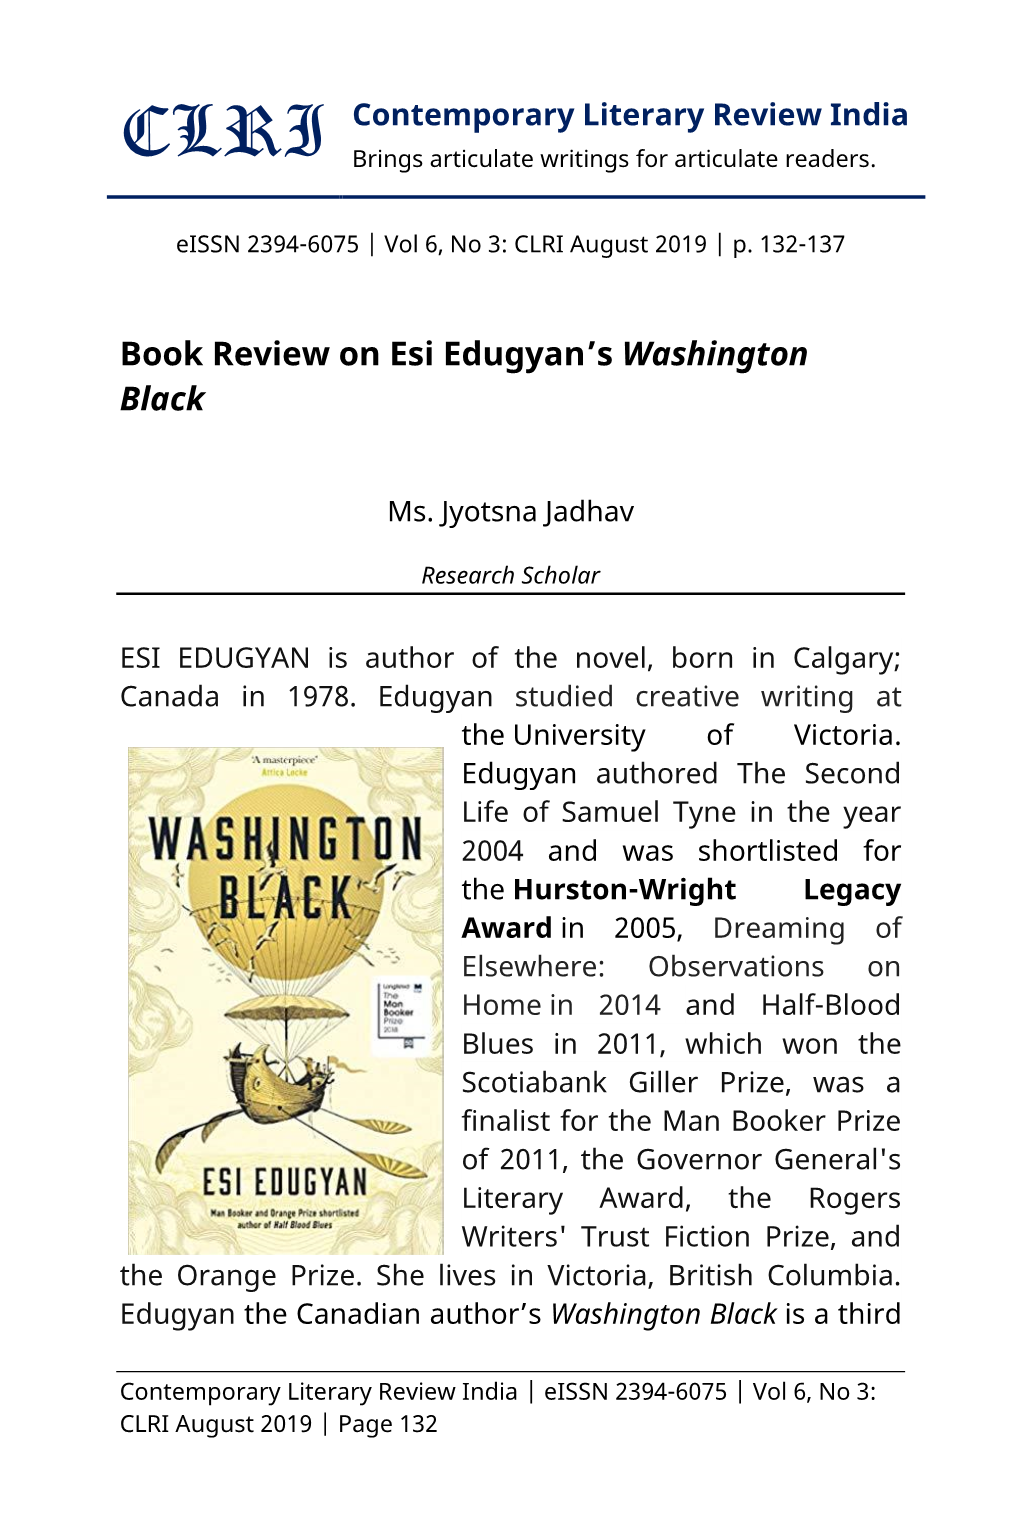 Book Review on Esi Edugyan's Washington Black